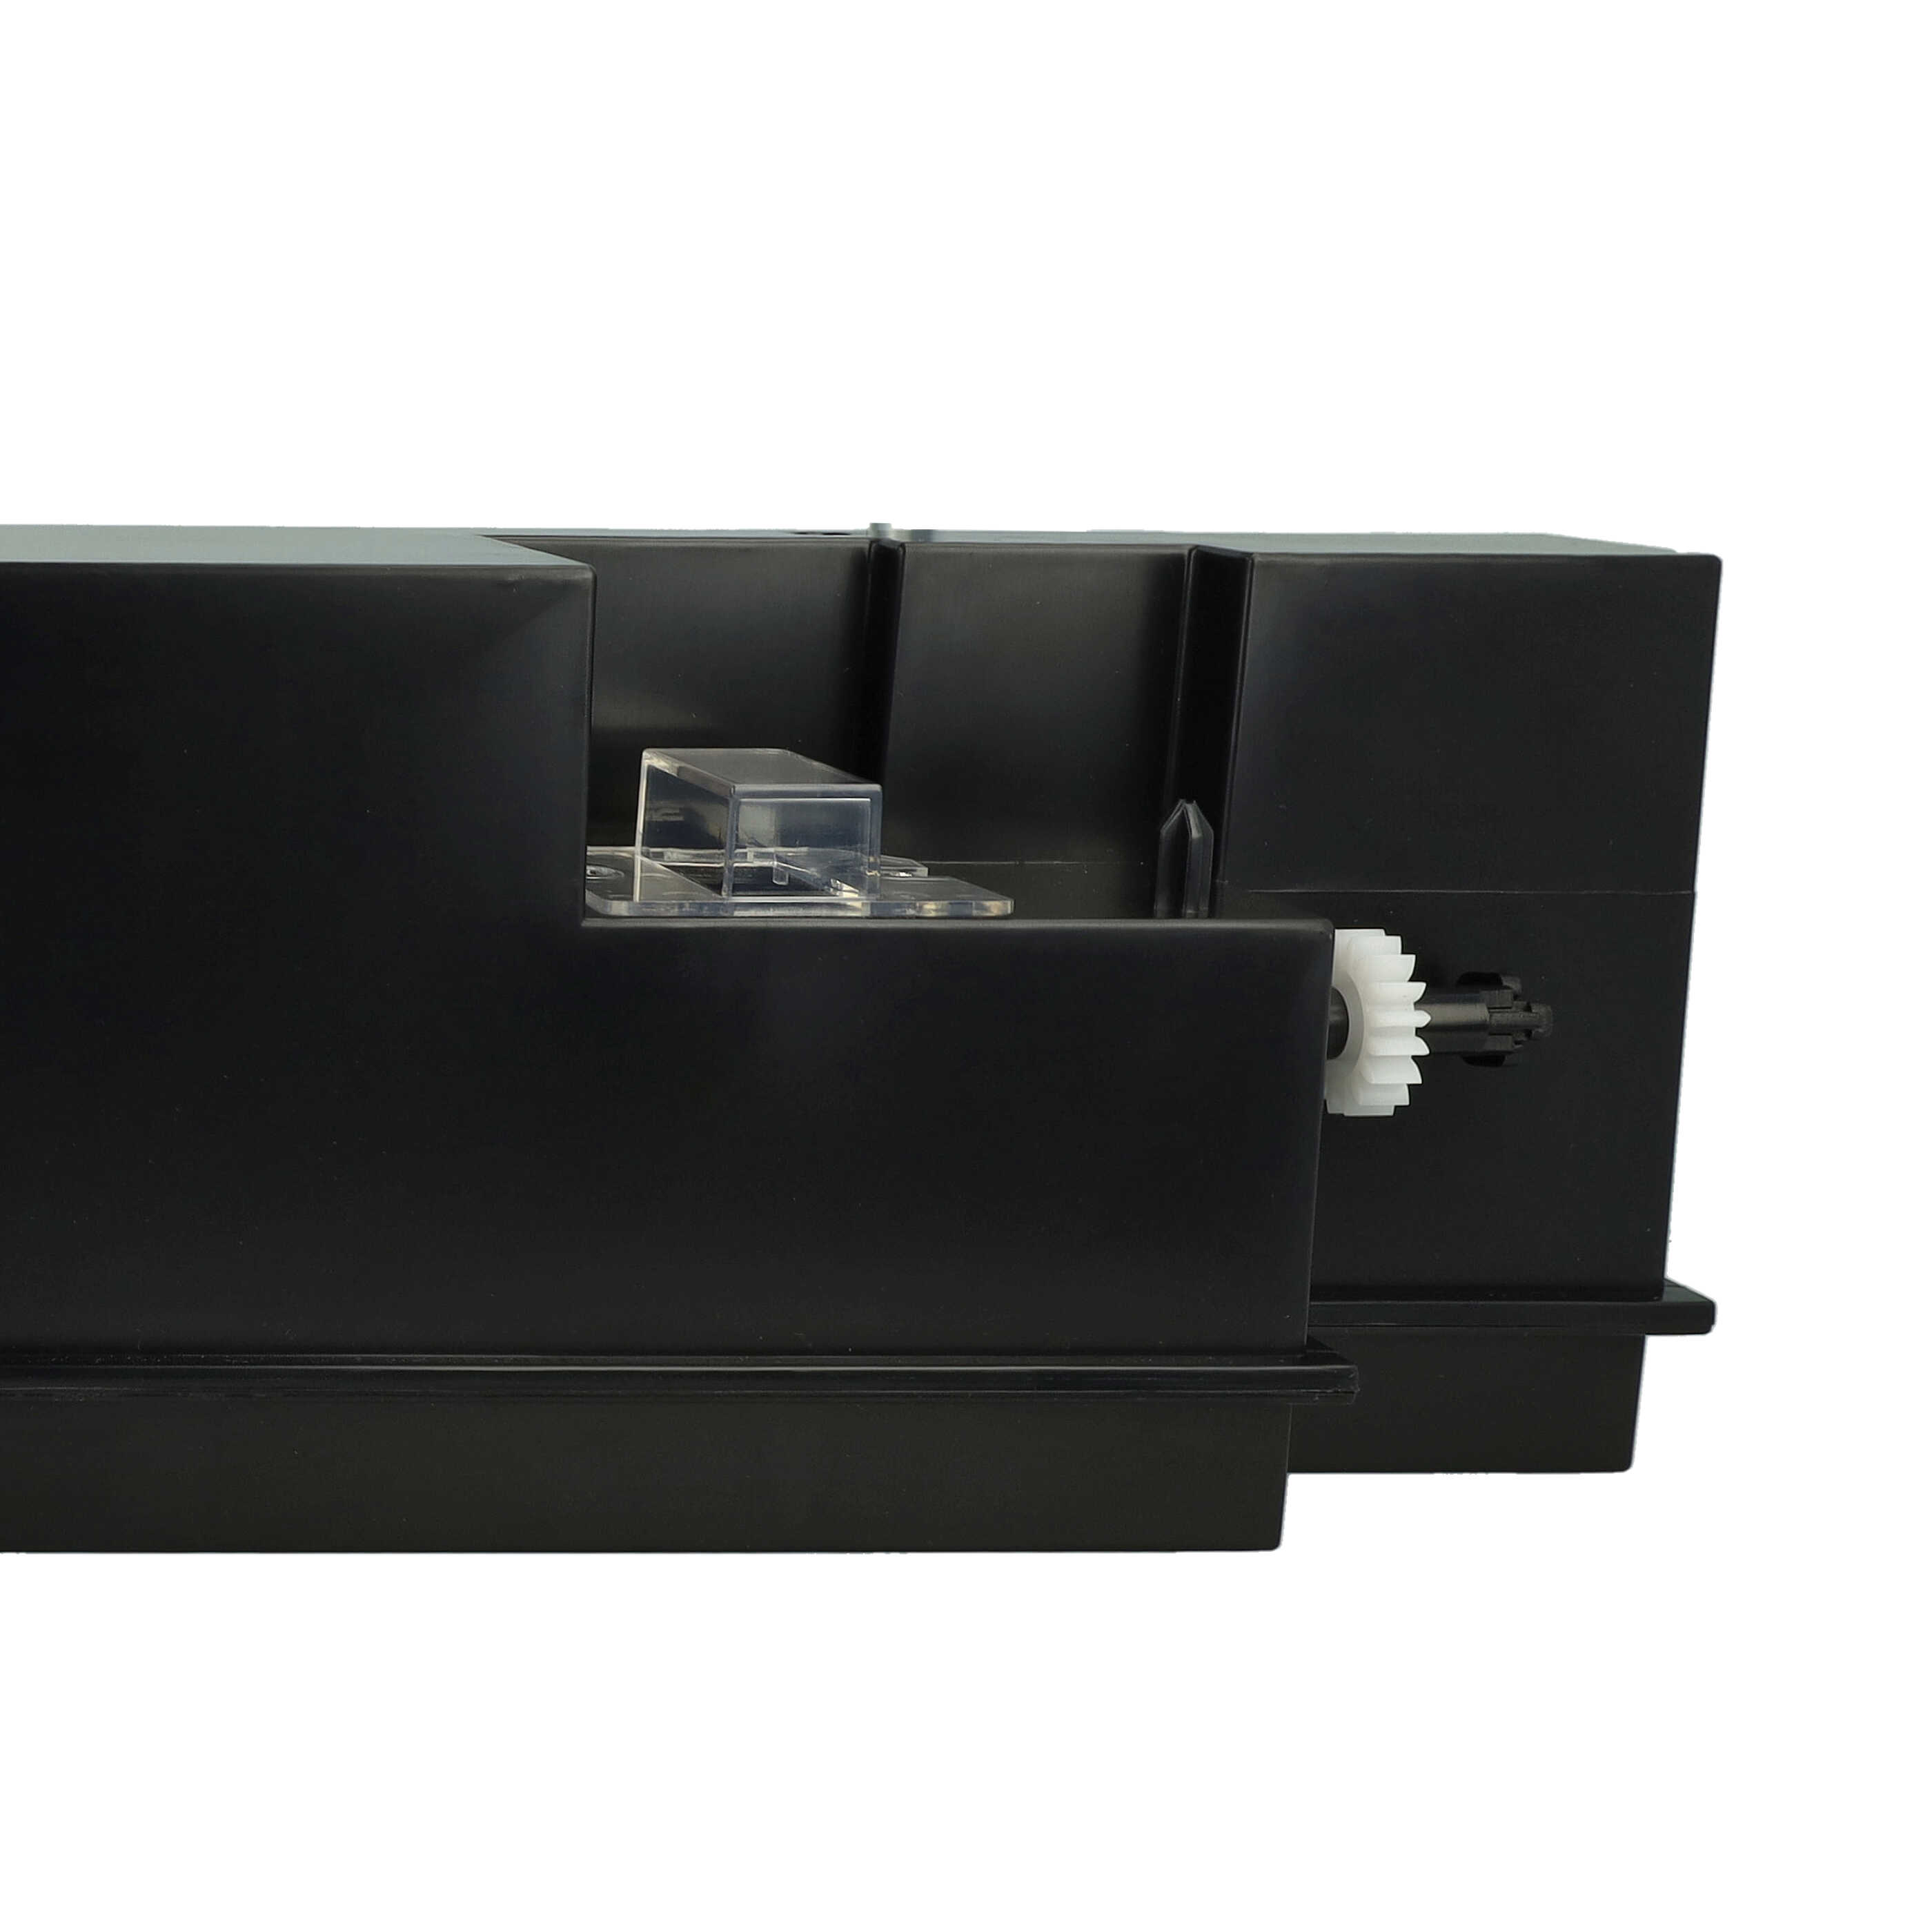 Pojemnik na zużyty toner do drukarki laserowej zam. Konica Minolta A0XPWY2, 1008661, A0XPWY5, A0XPWY4 - czarny